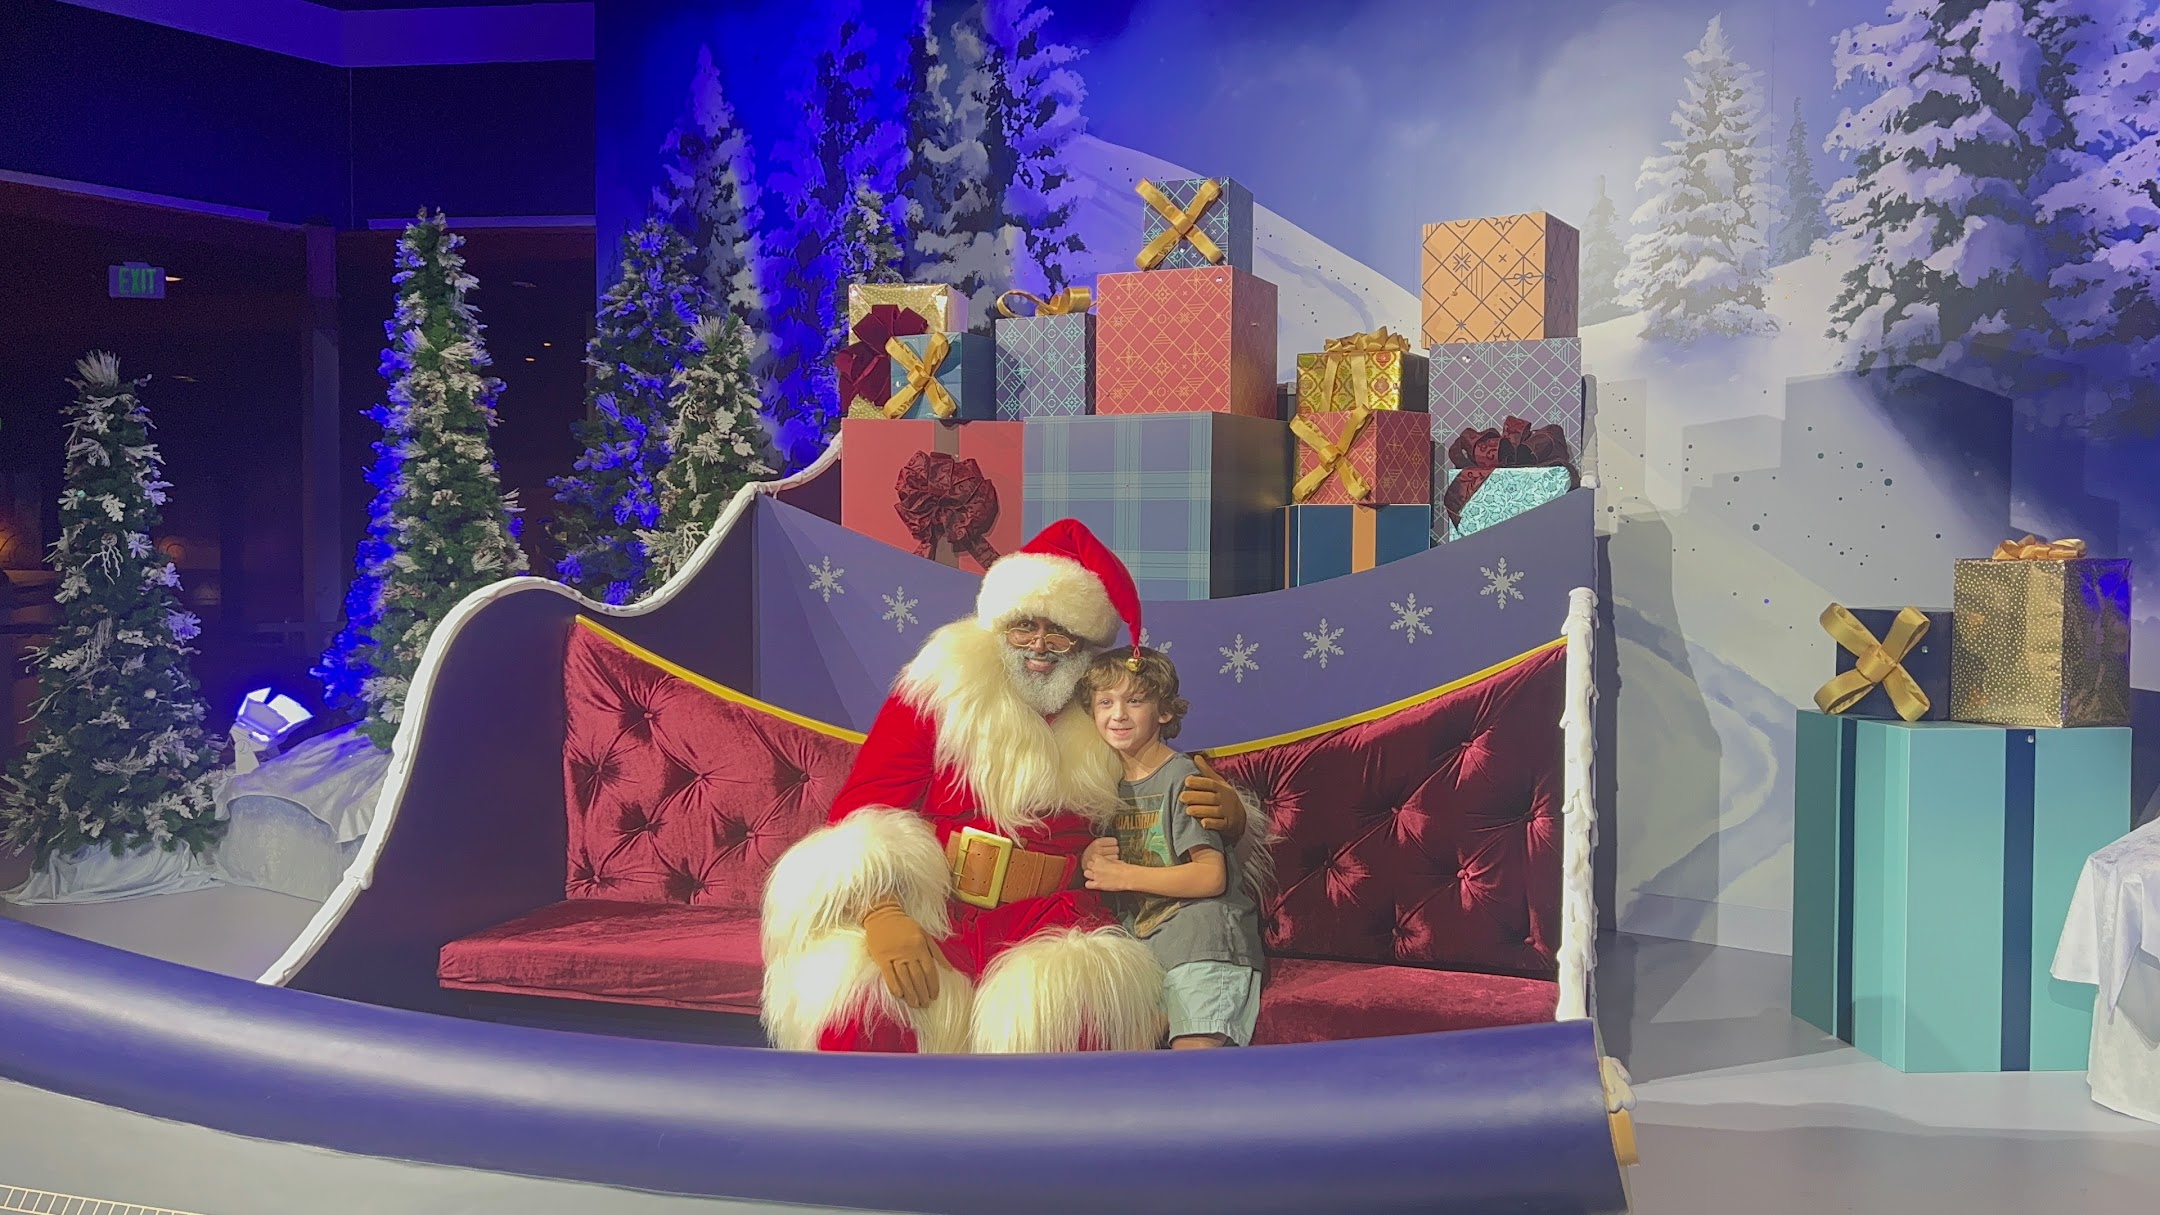 Disney World Christmas Story: Italy La Befana at EPCOT 